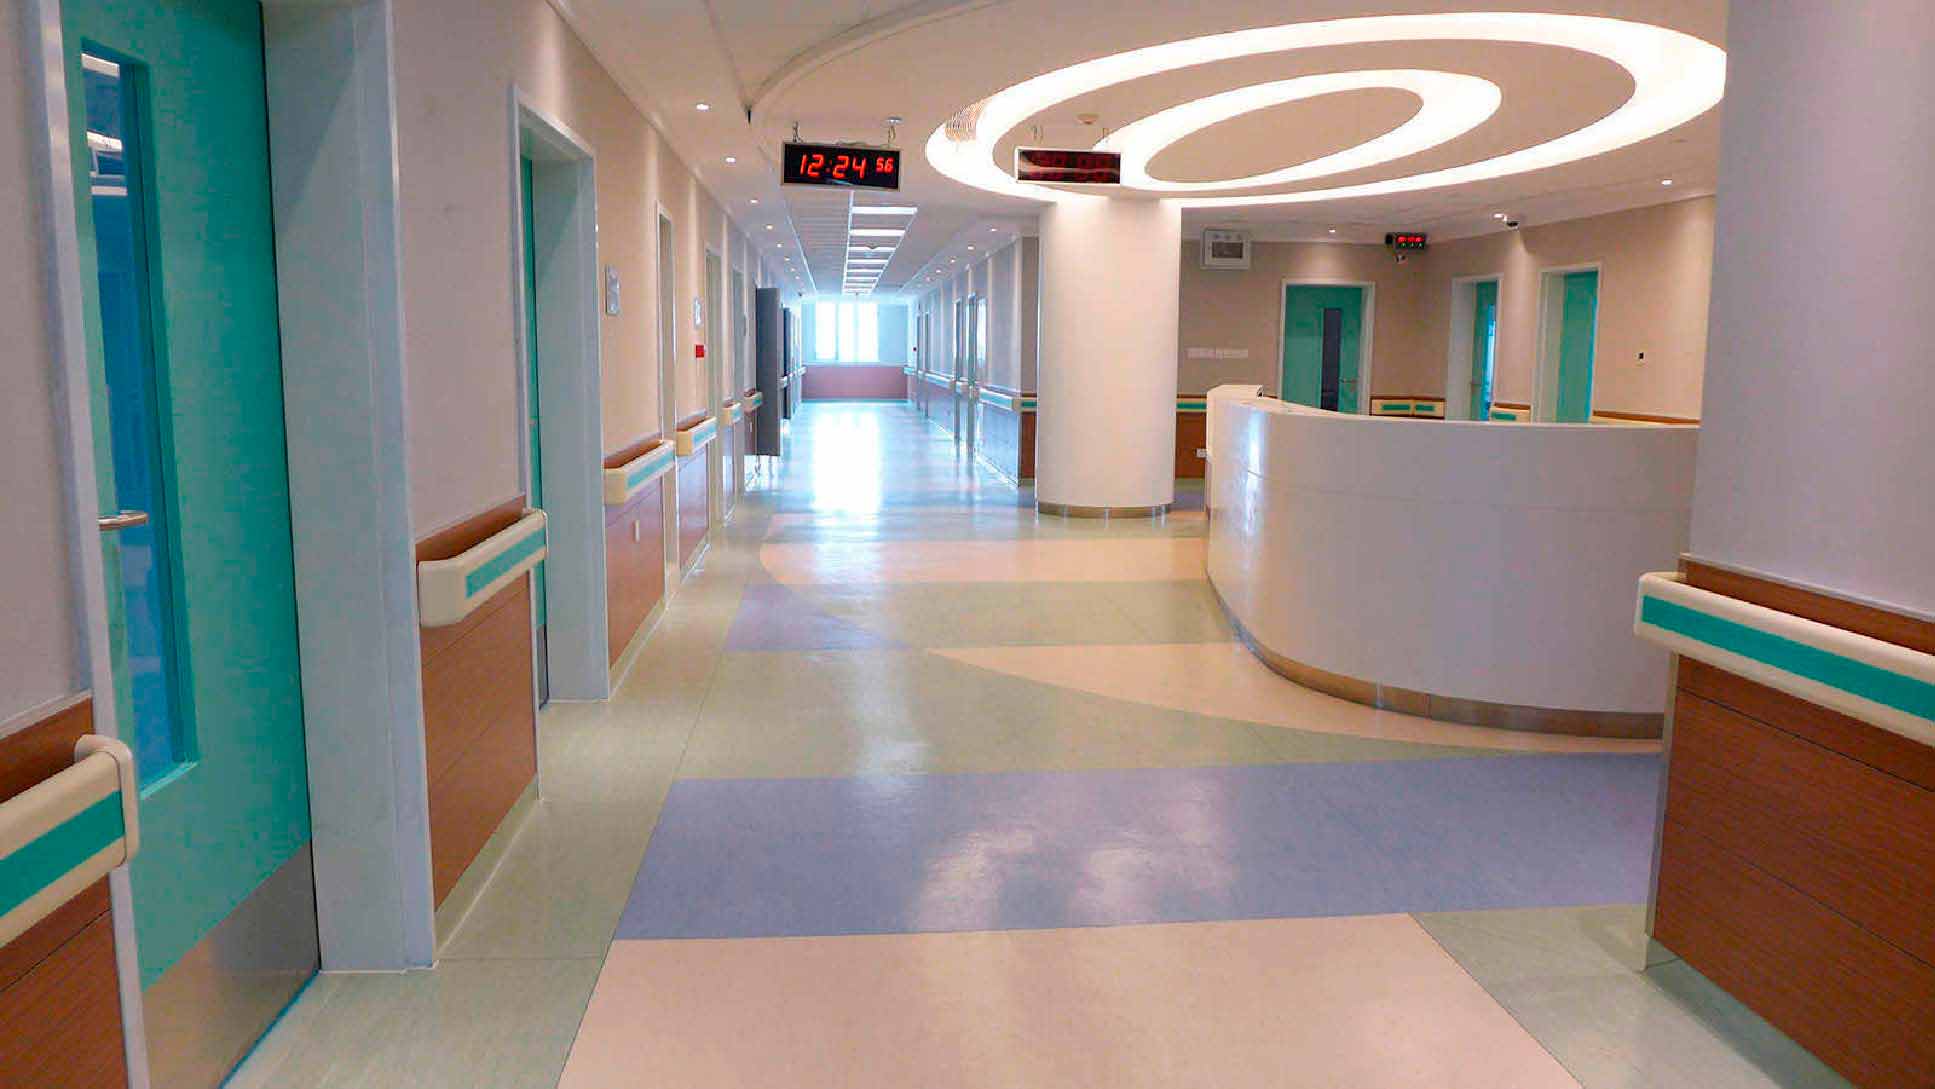 piso vinílico para la recepción de hospitales y quirofanos